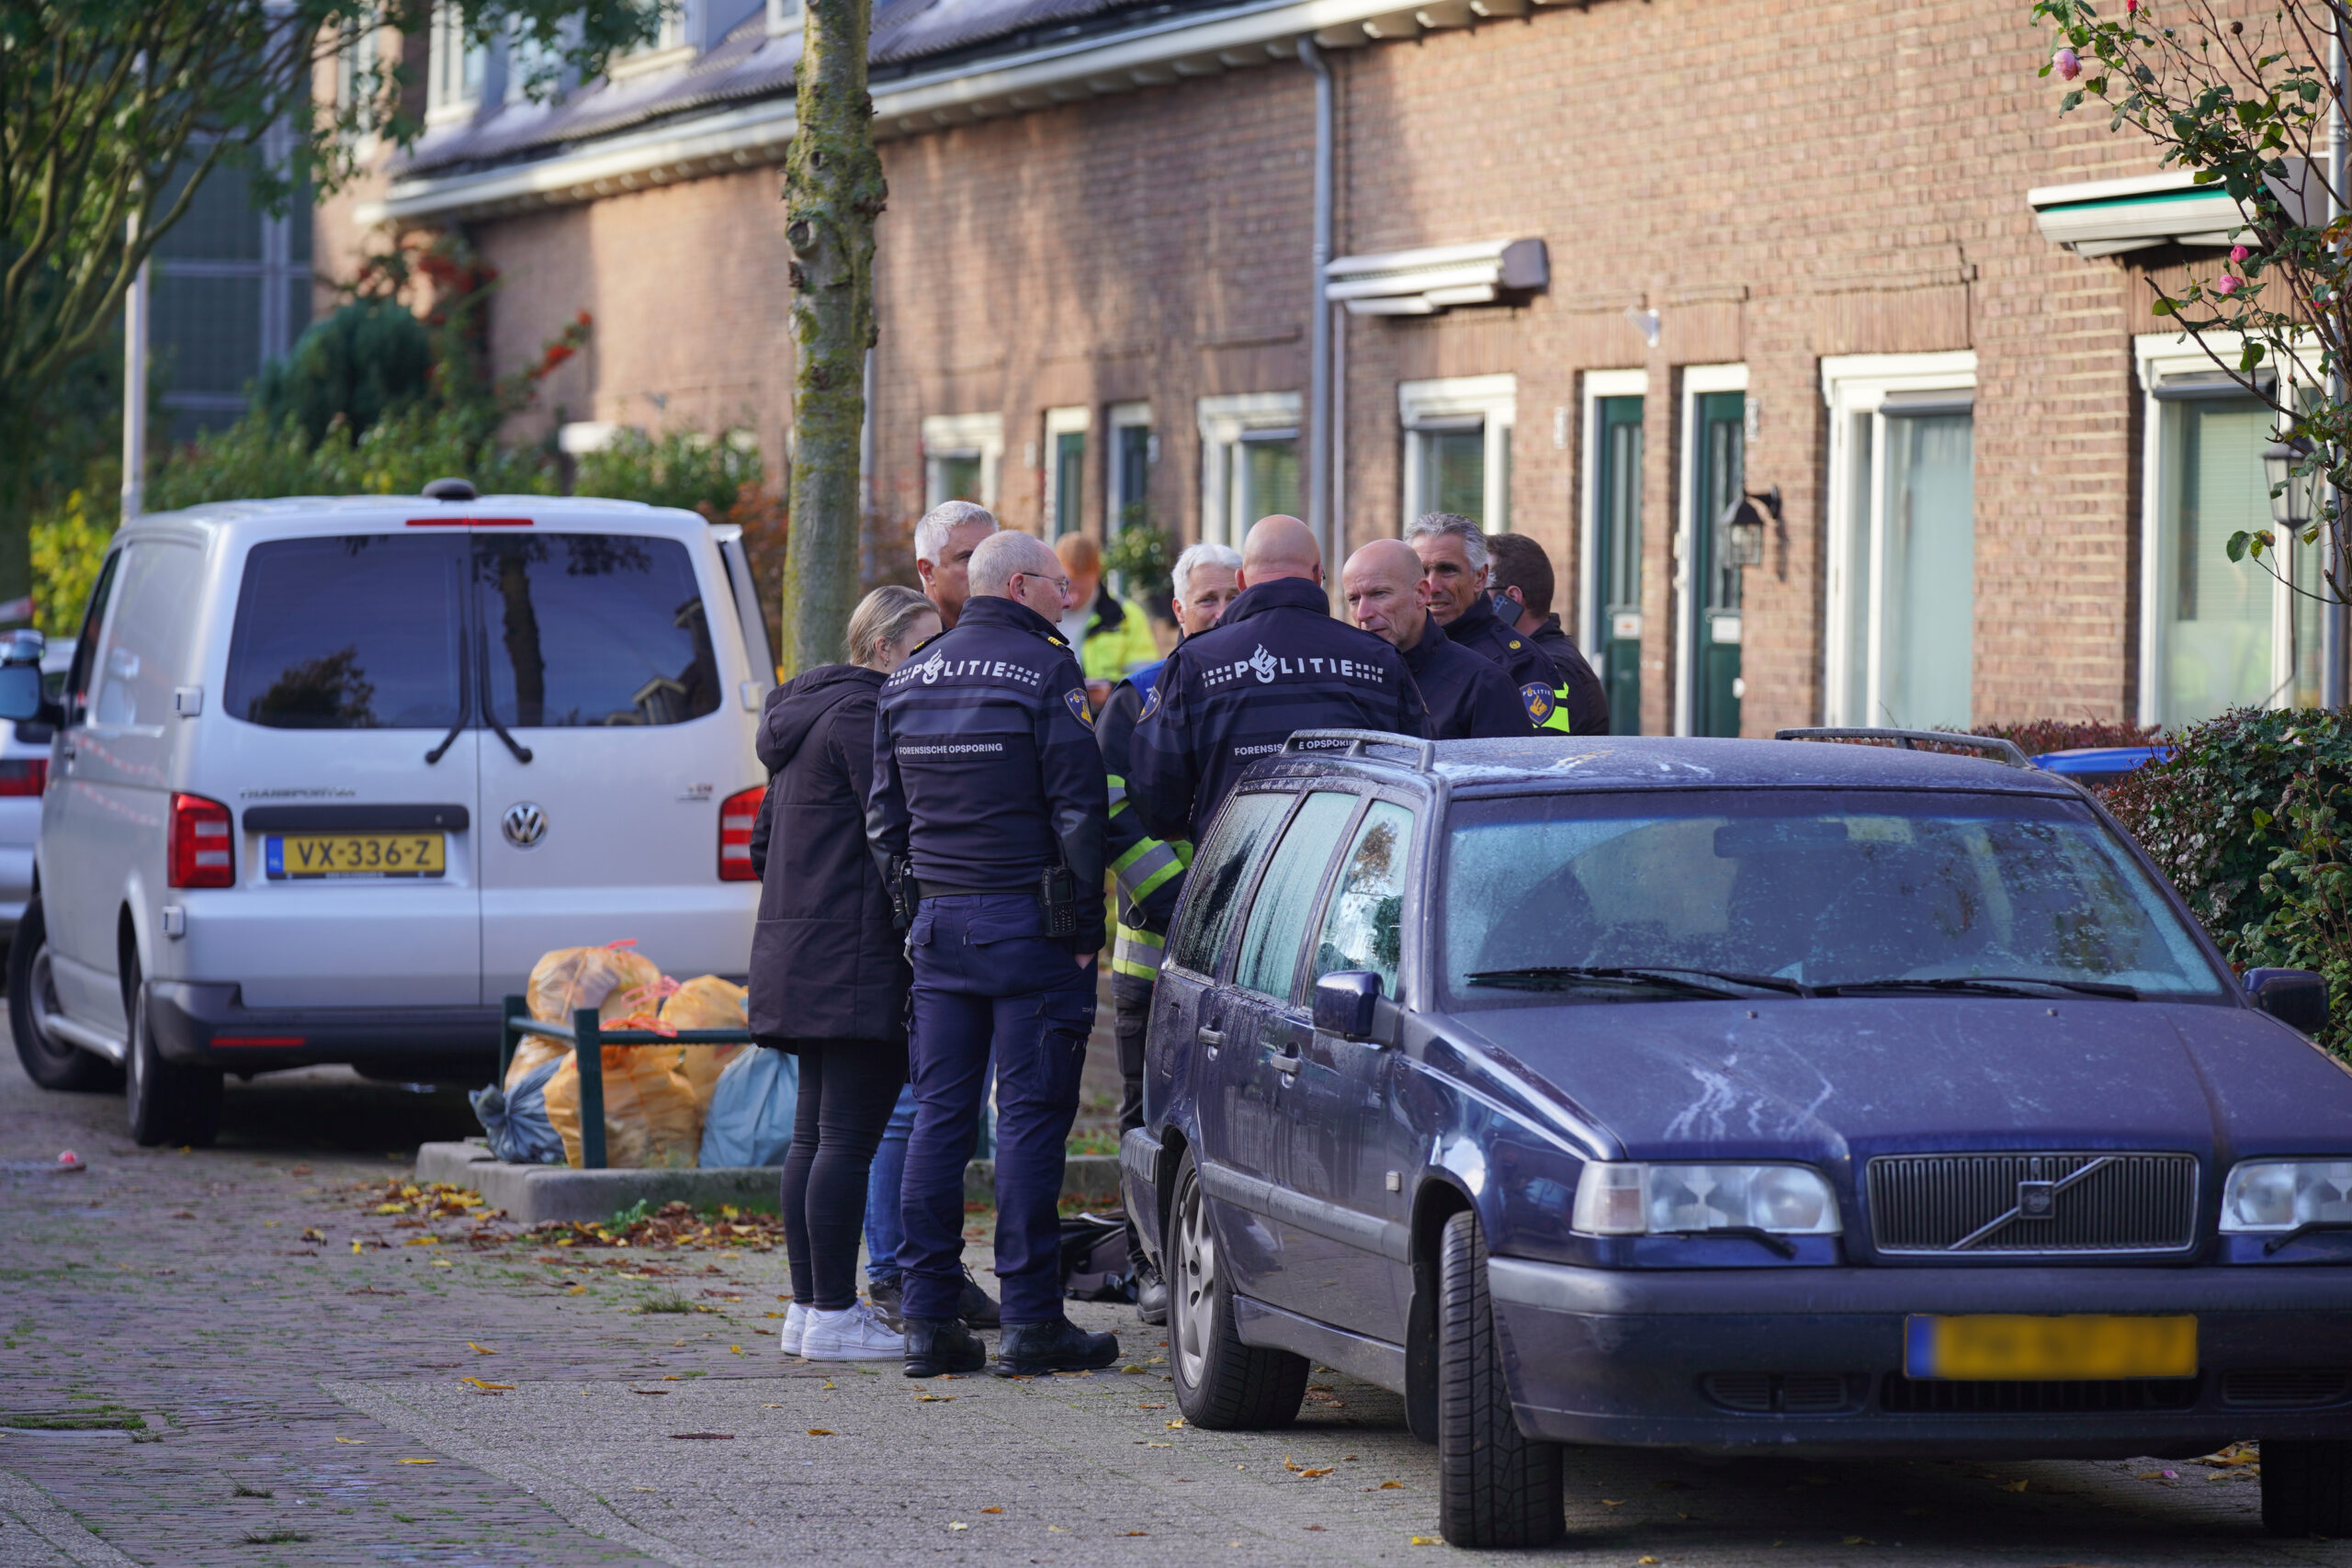 FOTO’S Dode gevonden na brand in woning Nijmegen